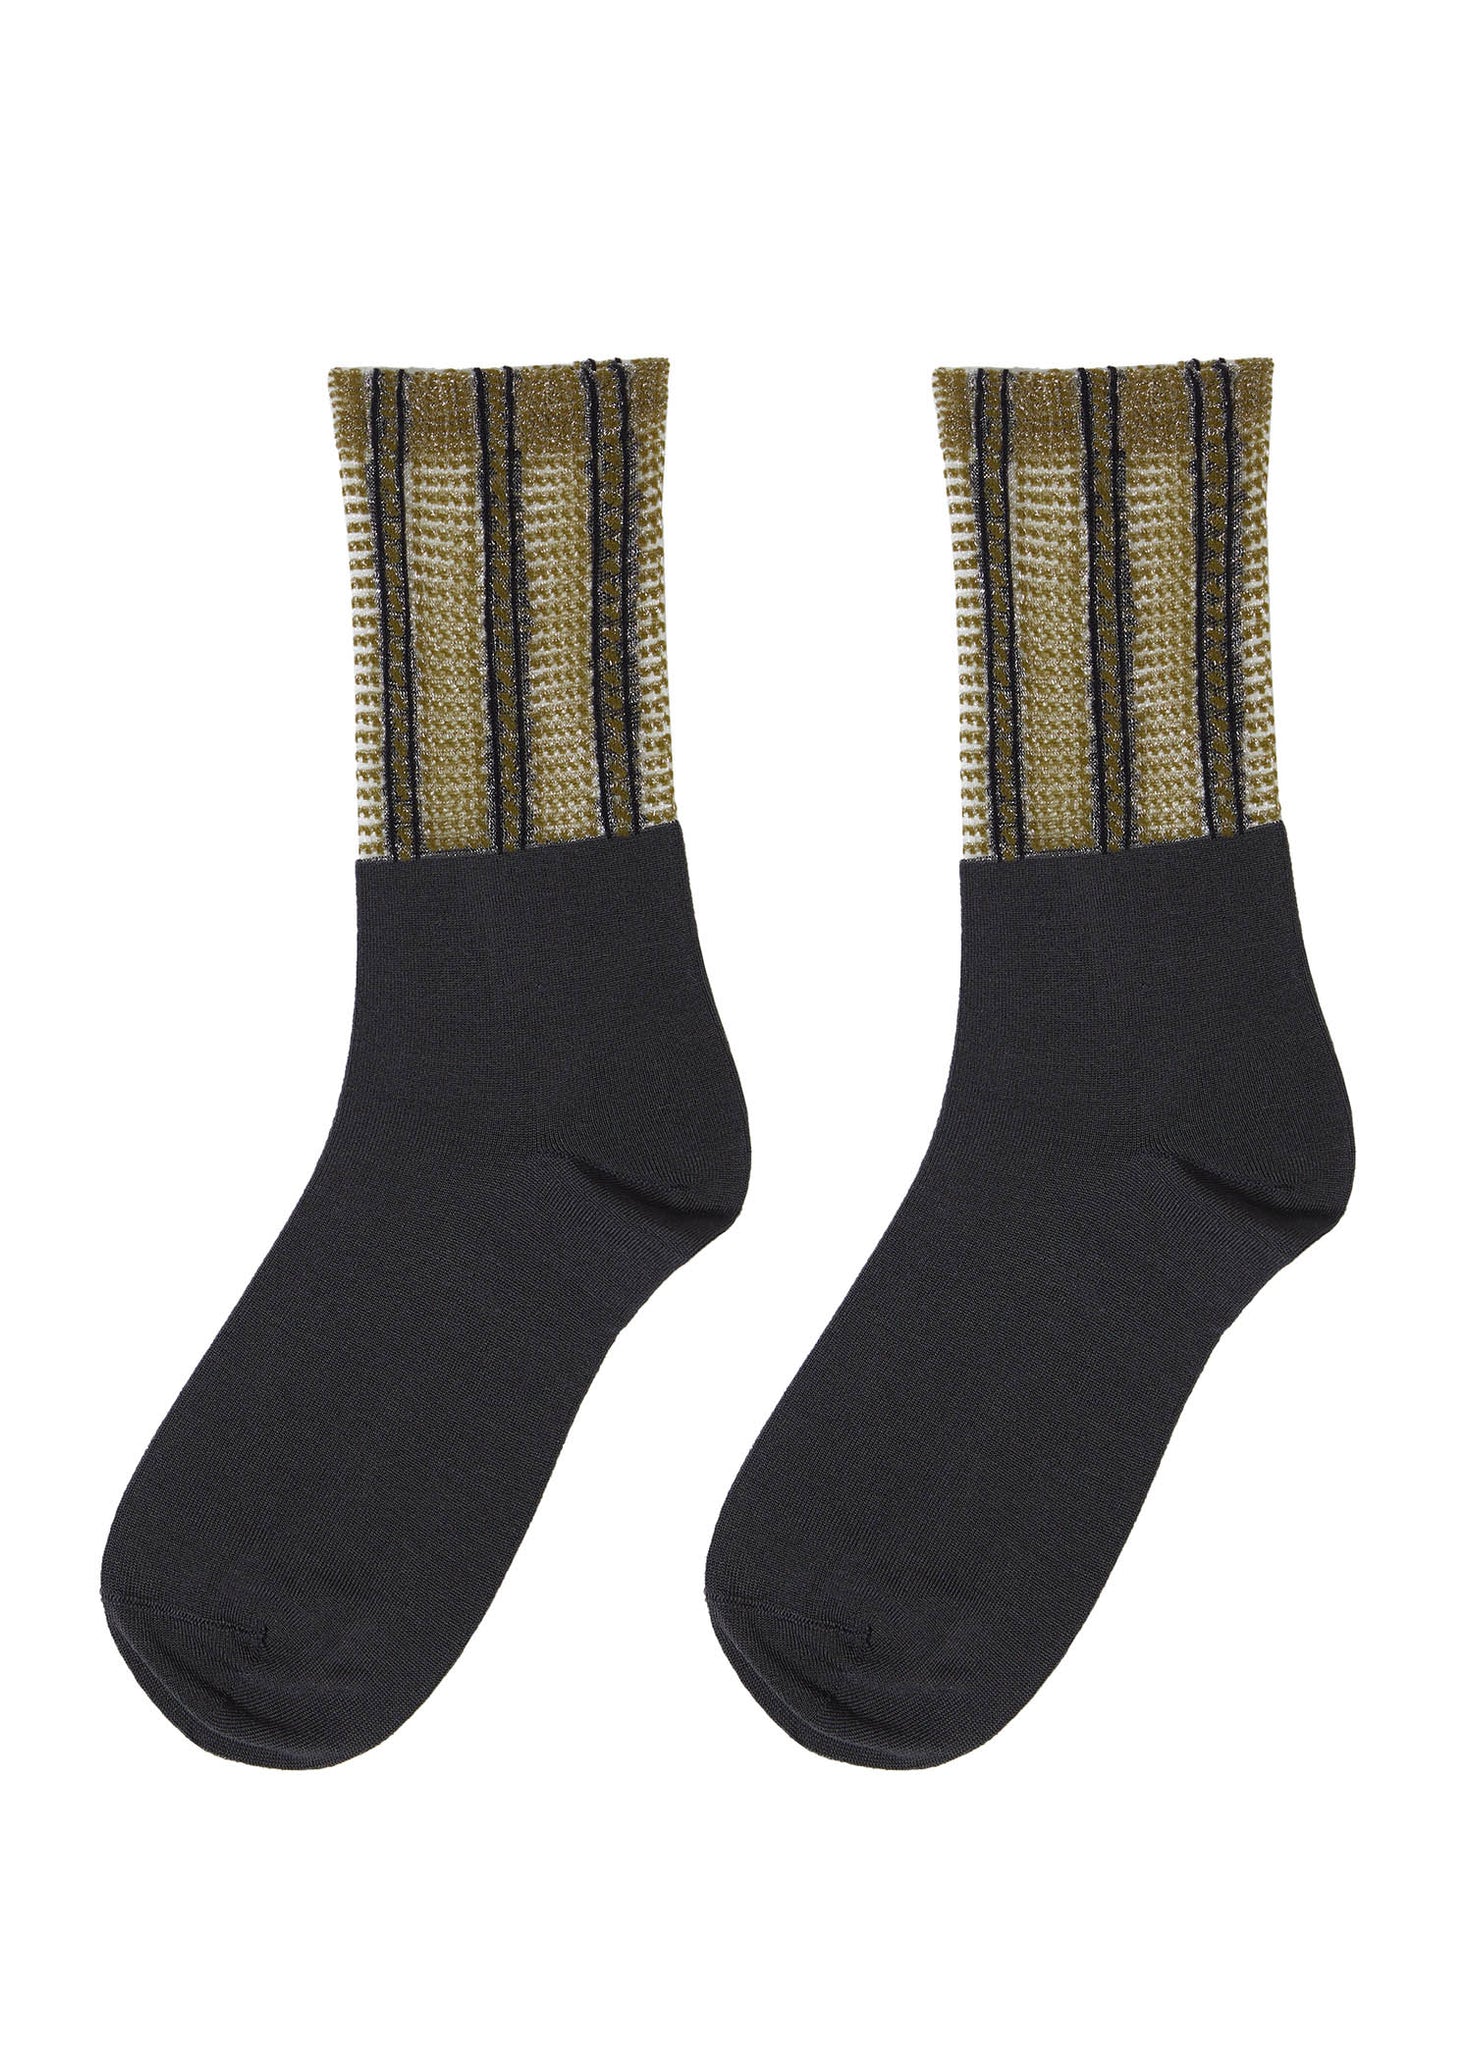 Socks / JNBY Woven Pacthwork Socks